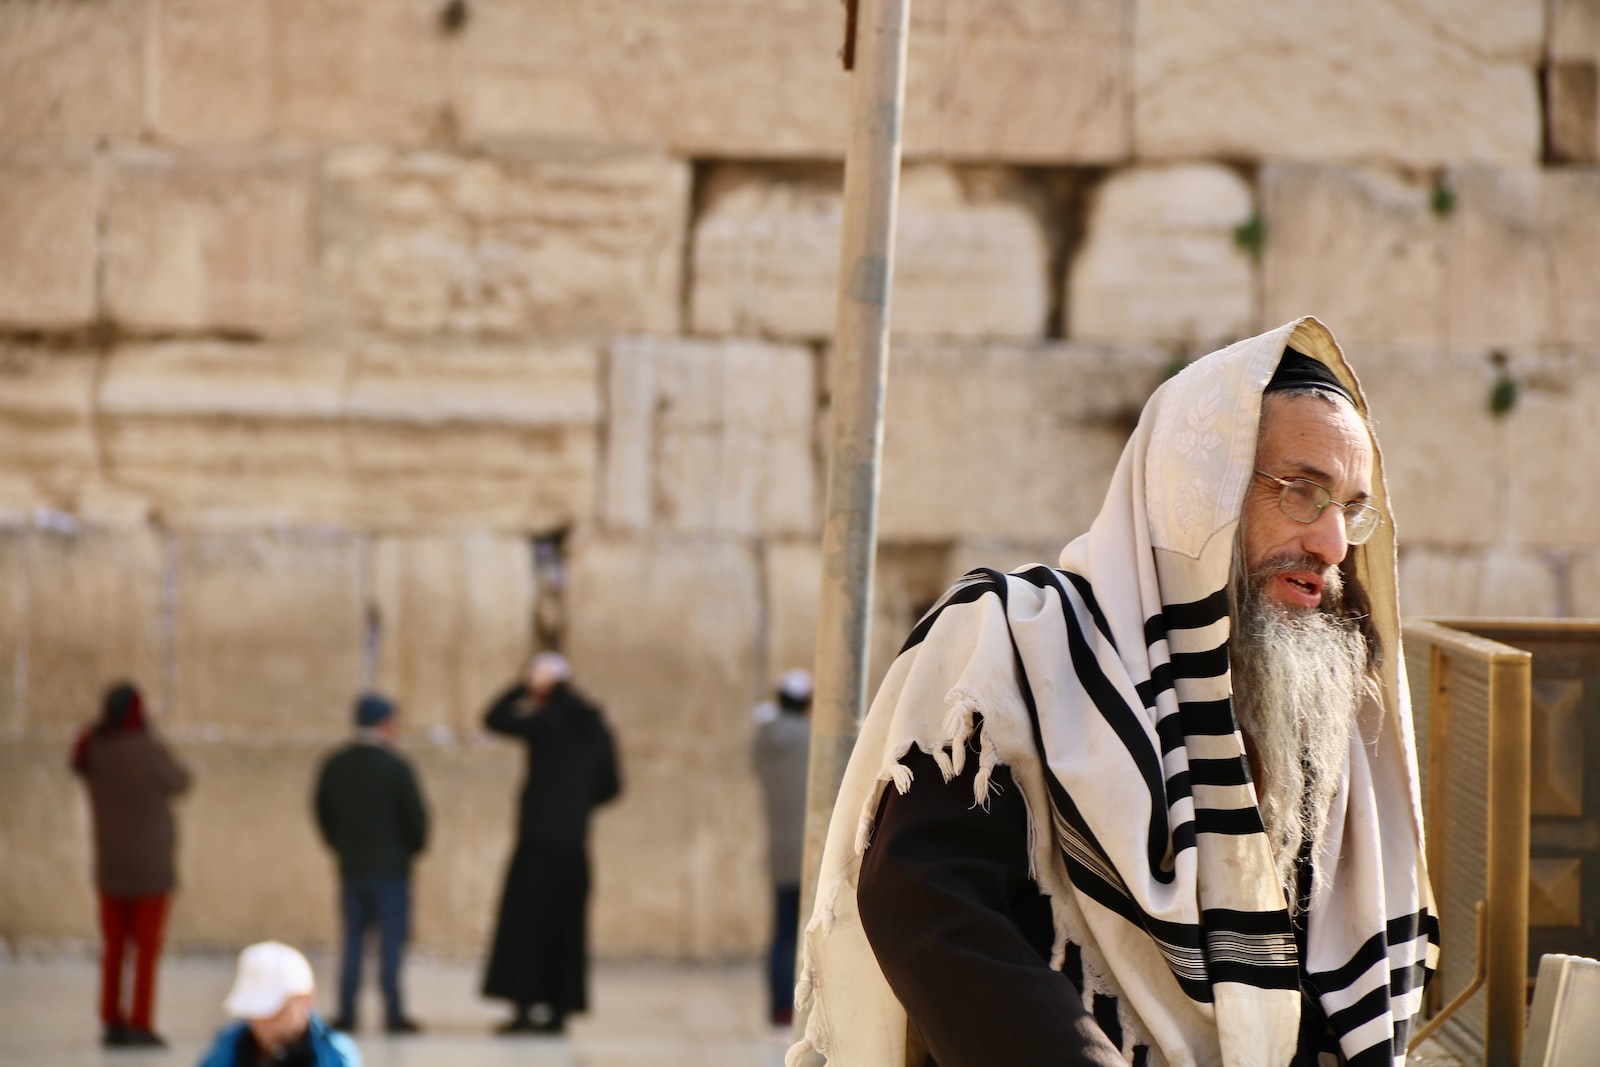 man in prayer shawl standing near people during daytime